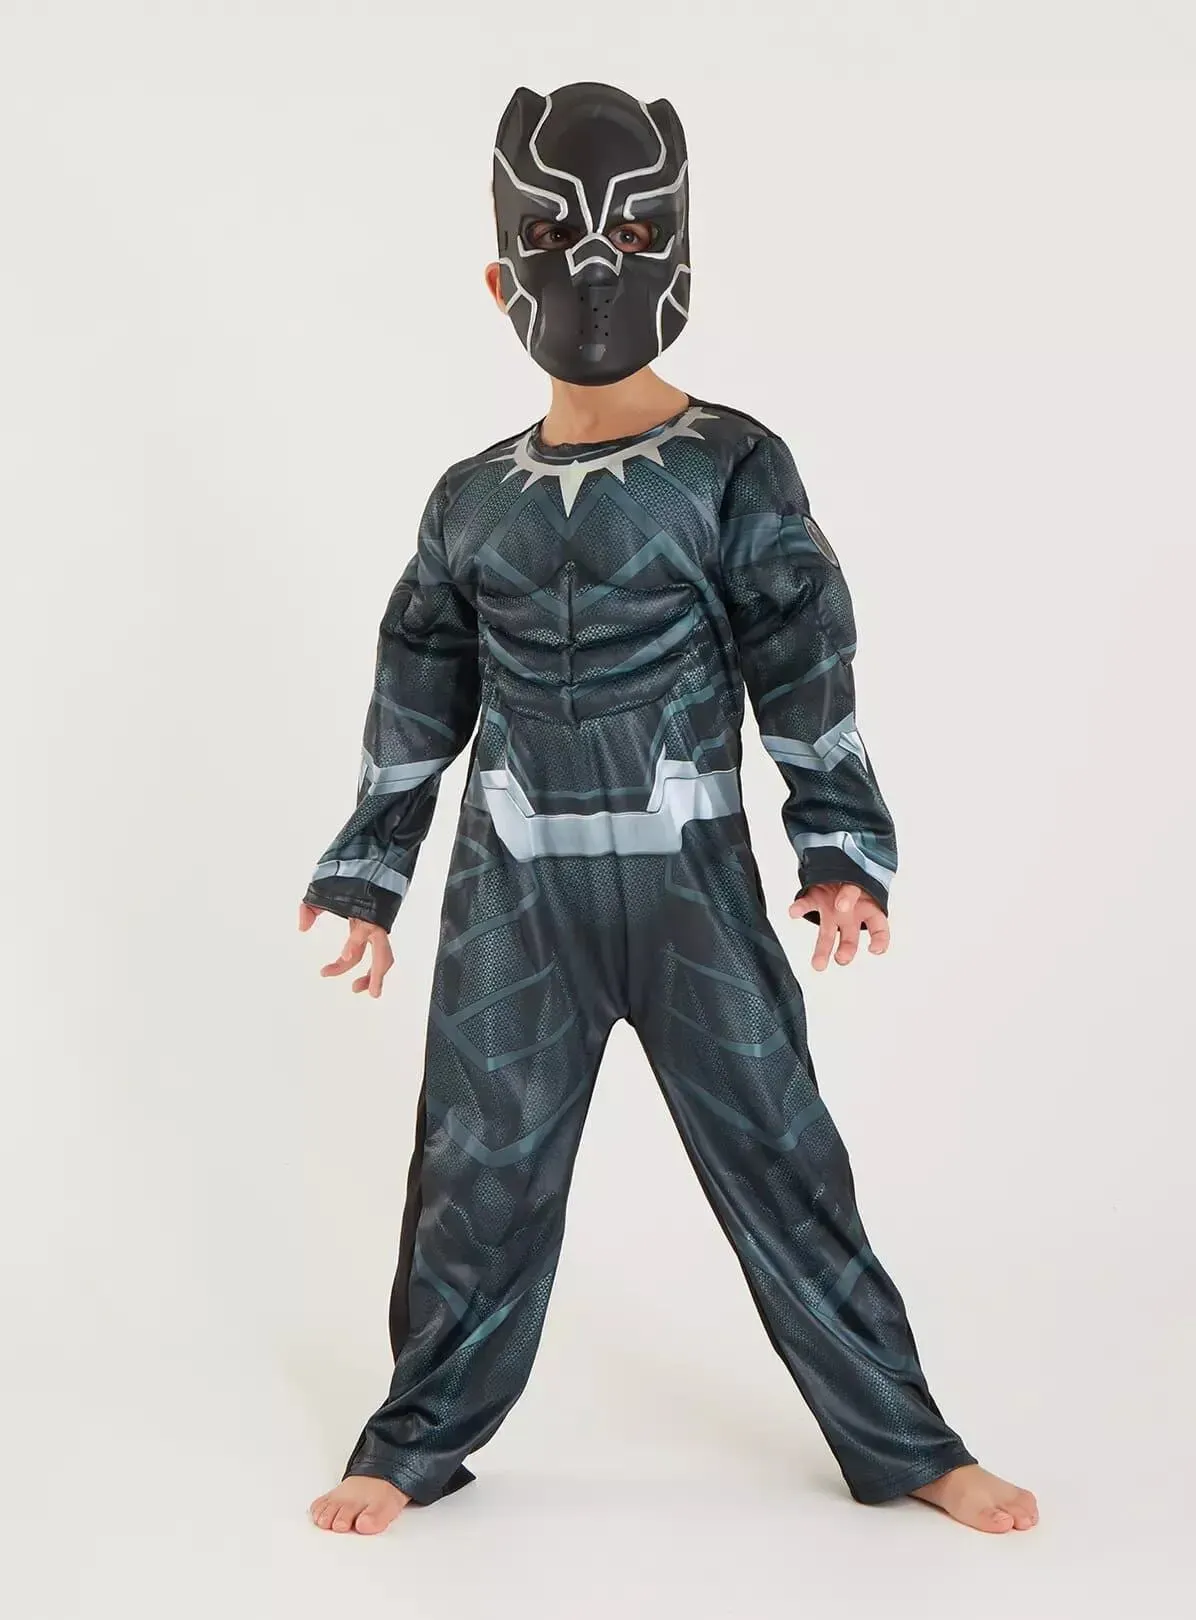 Disney Marvel Black Panther Costume & Mask.